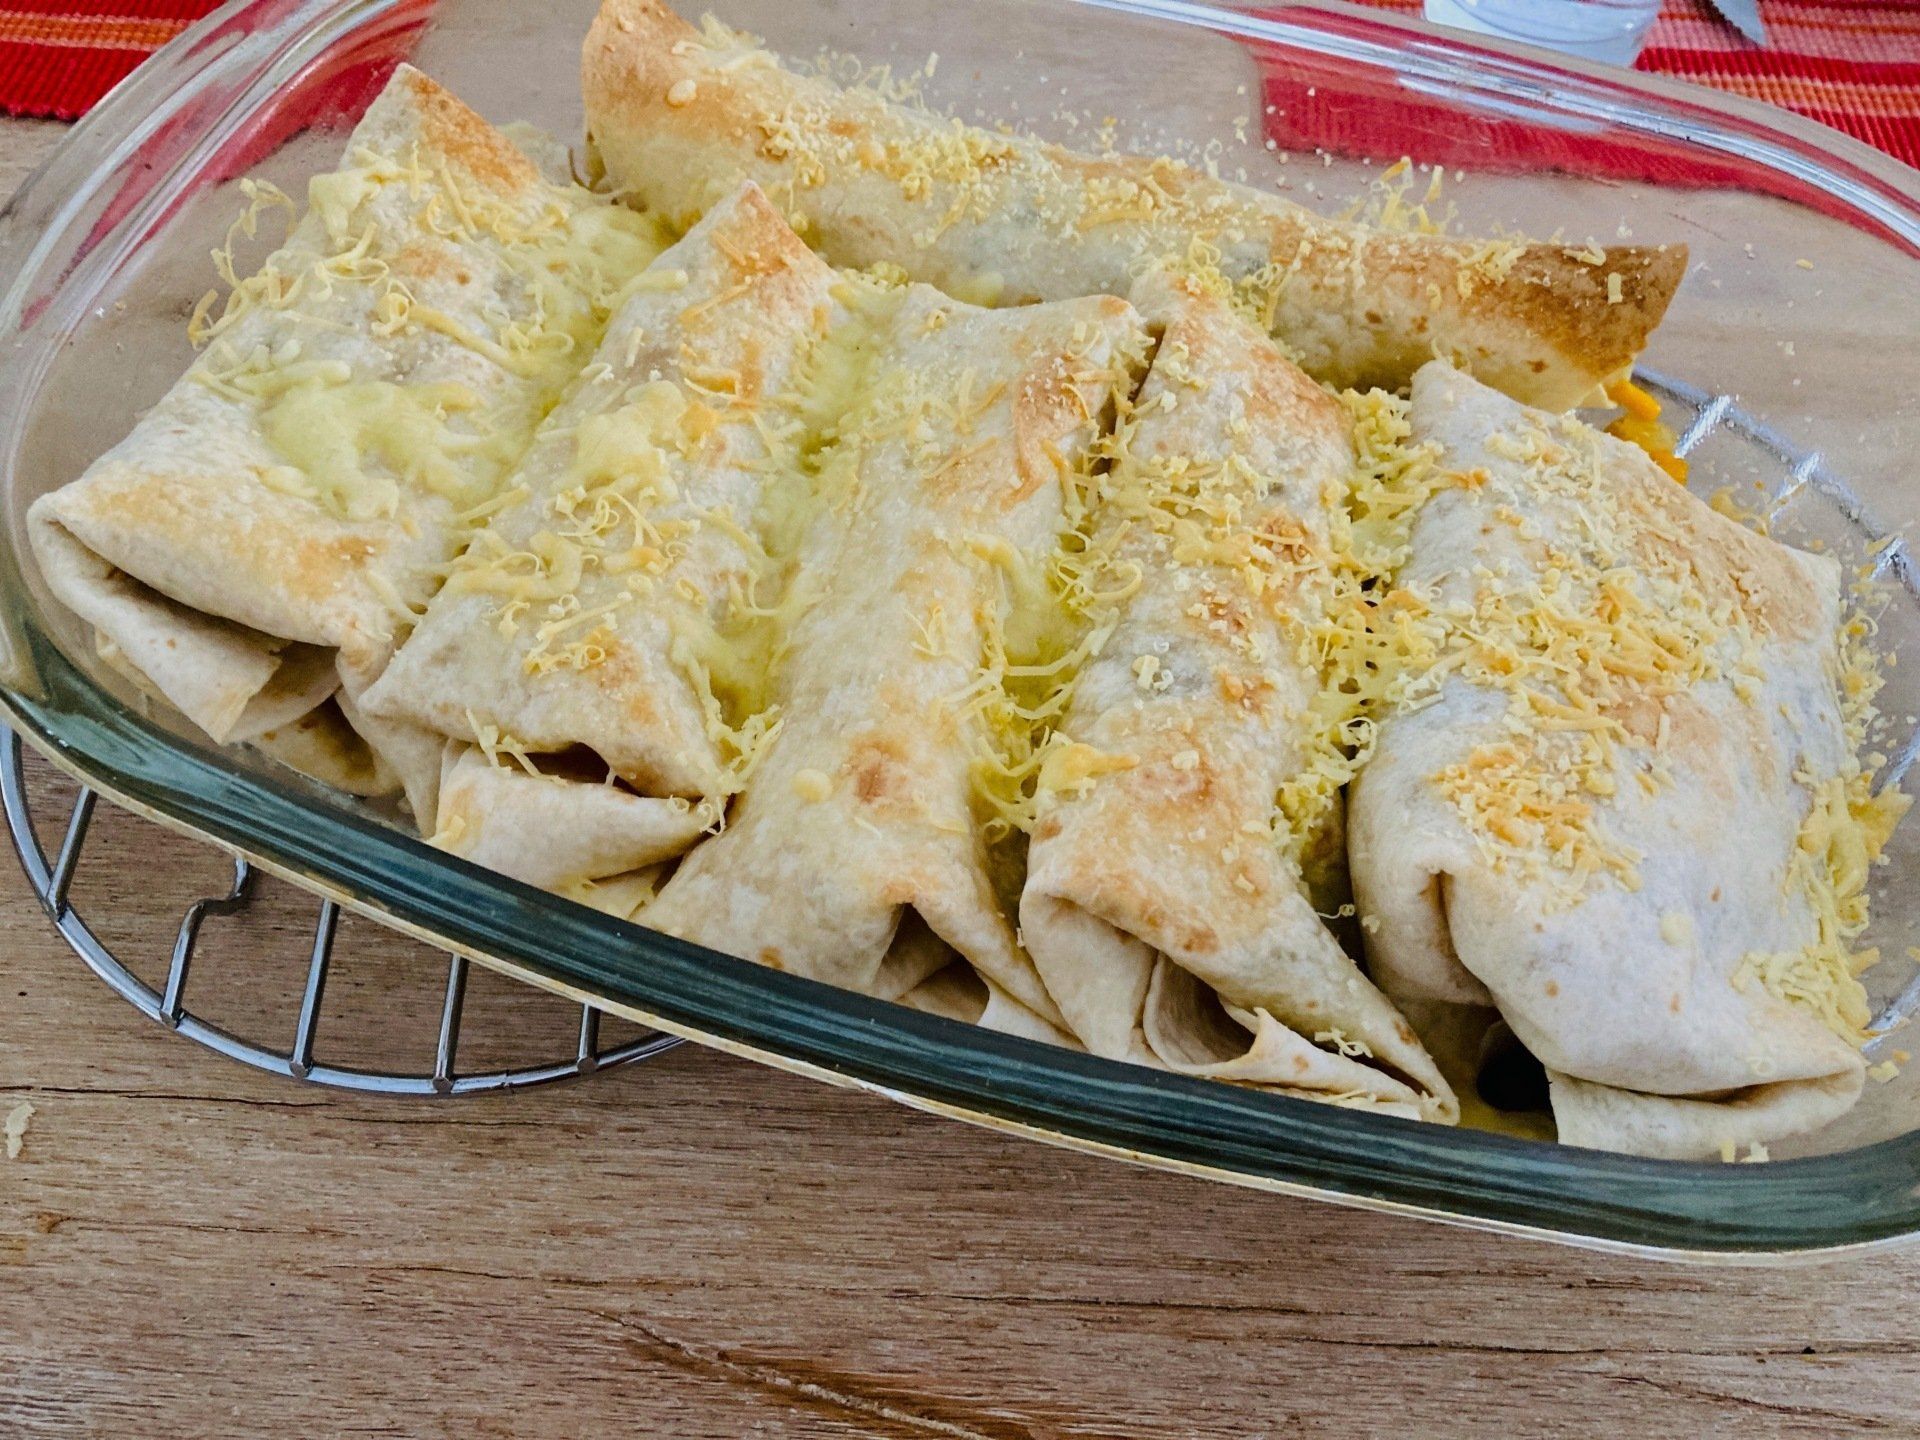 Recept; Vega burrito's met kaas uit de oven